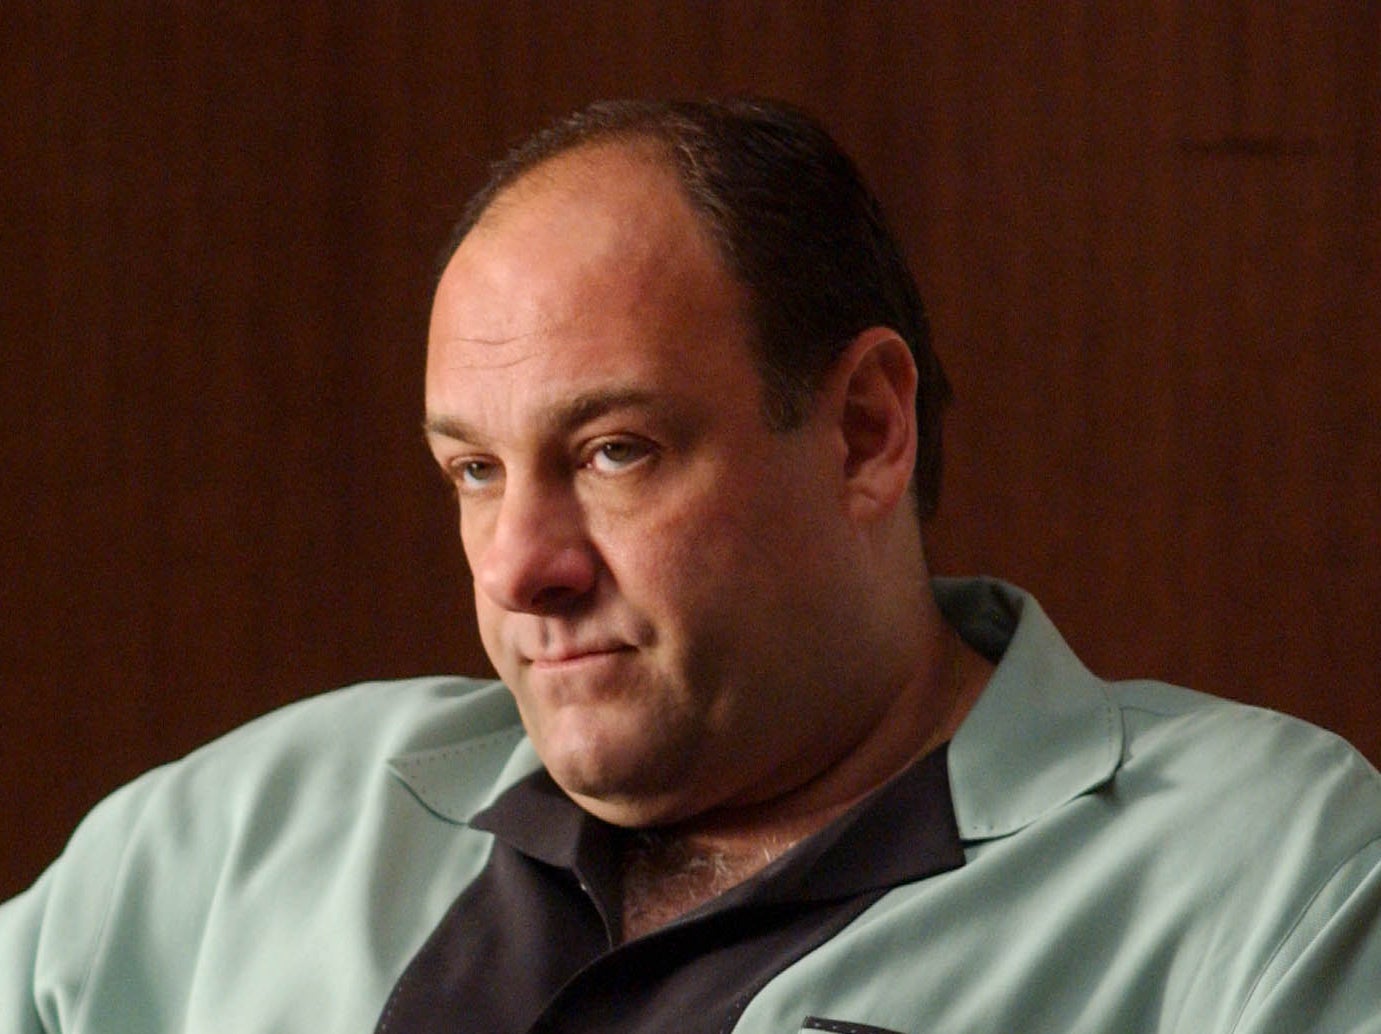 James Gandolfini as Tony Soprano in the HBO classic ‘The Sopranos'